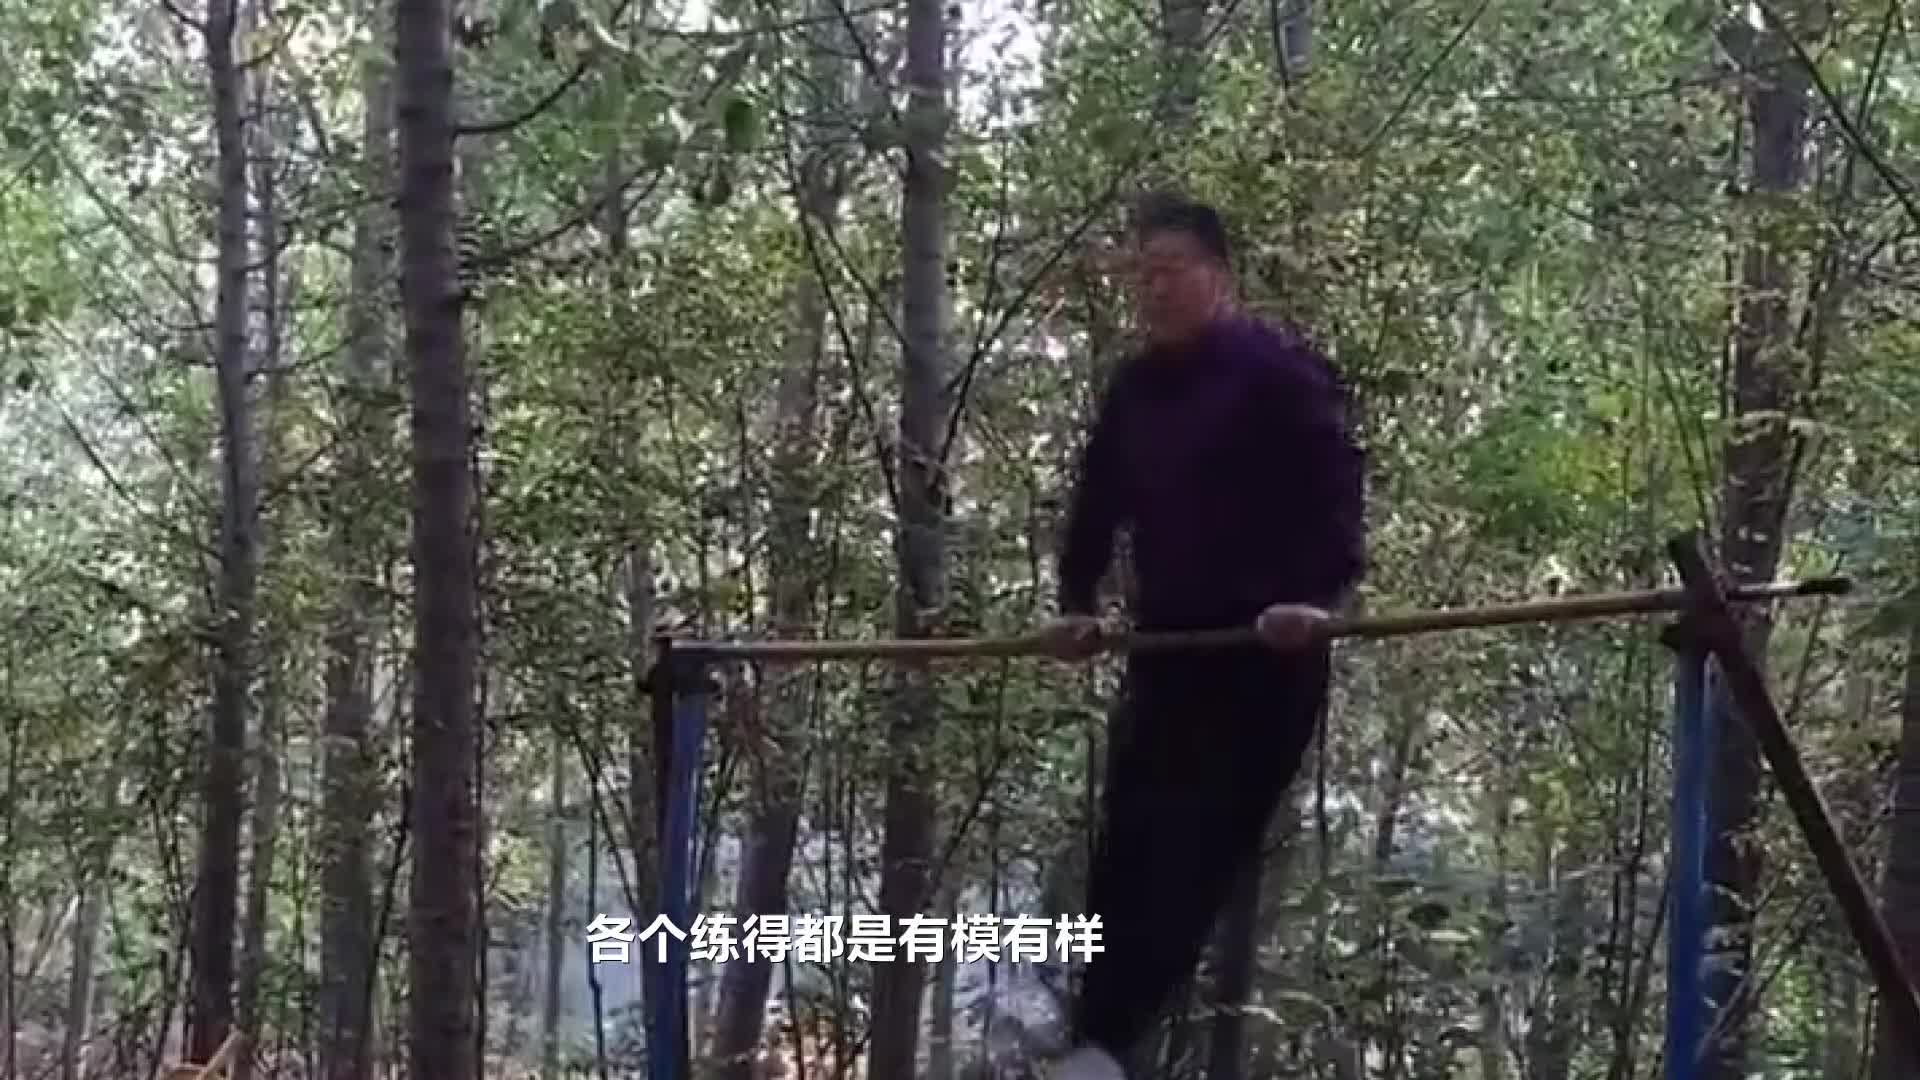 老年夫妇在树林里散步-蓝牛仔影像-中国原创广告影像素材